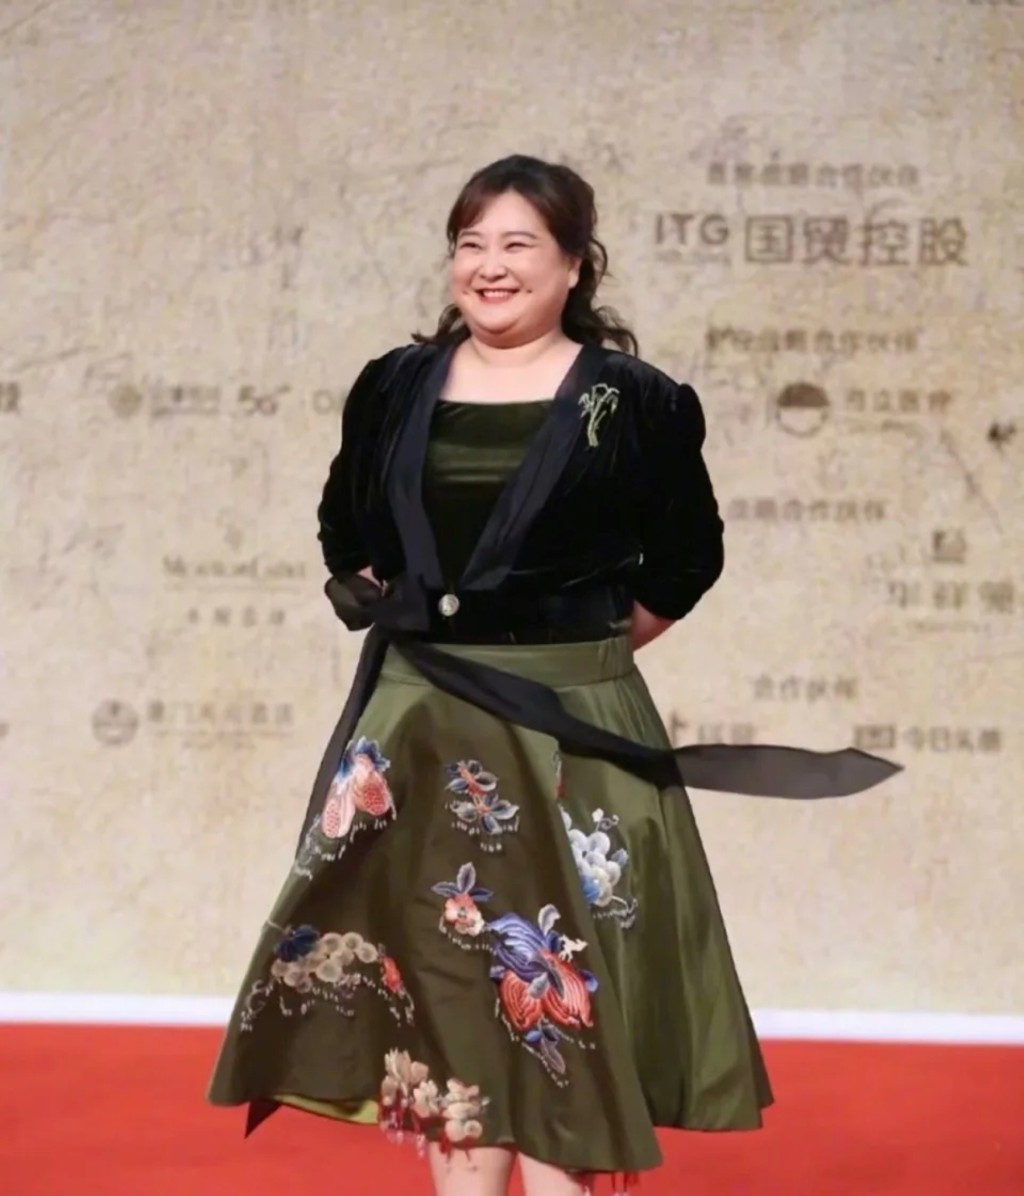 2021年贾玲出席第34届中国电影金鸡奖的照片。 中新社